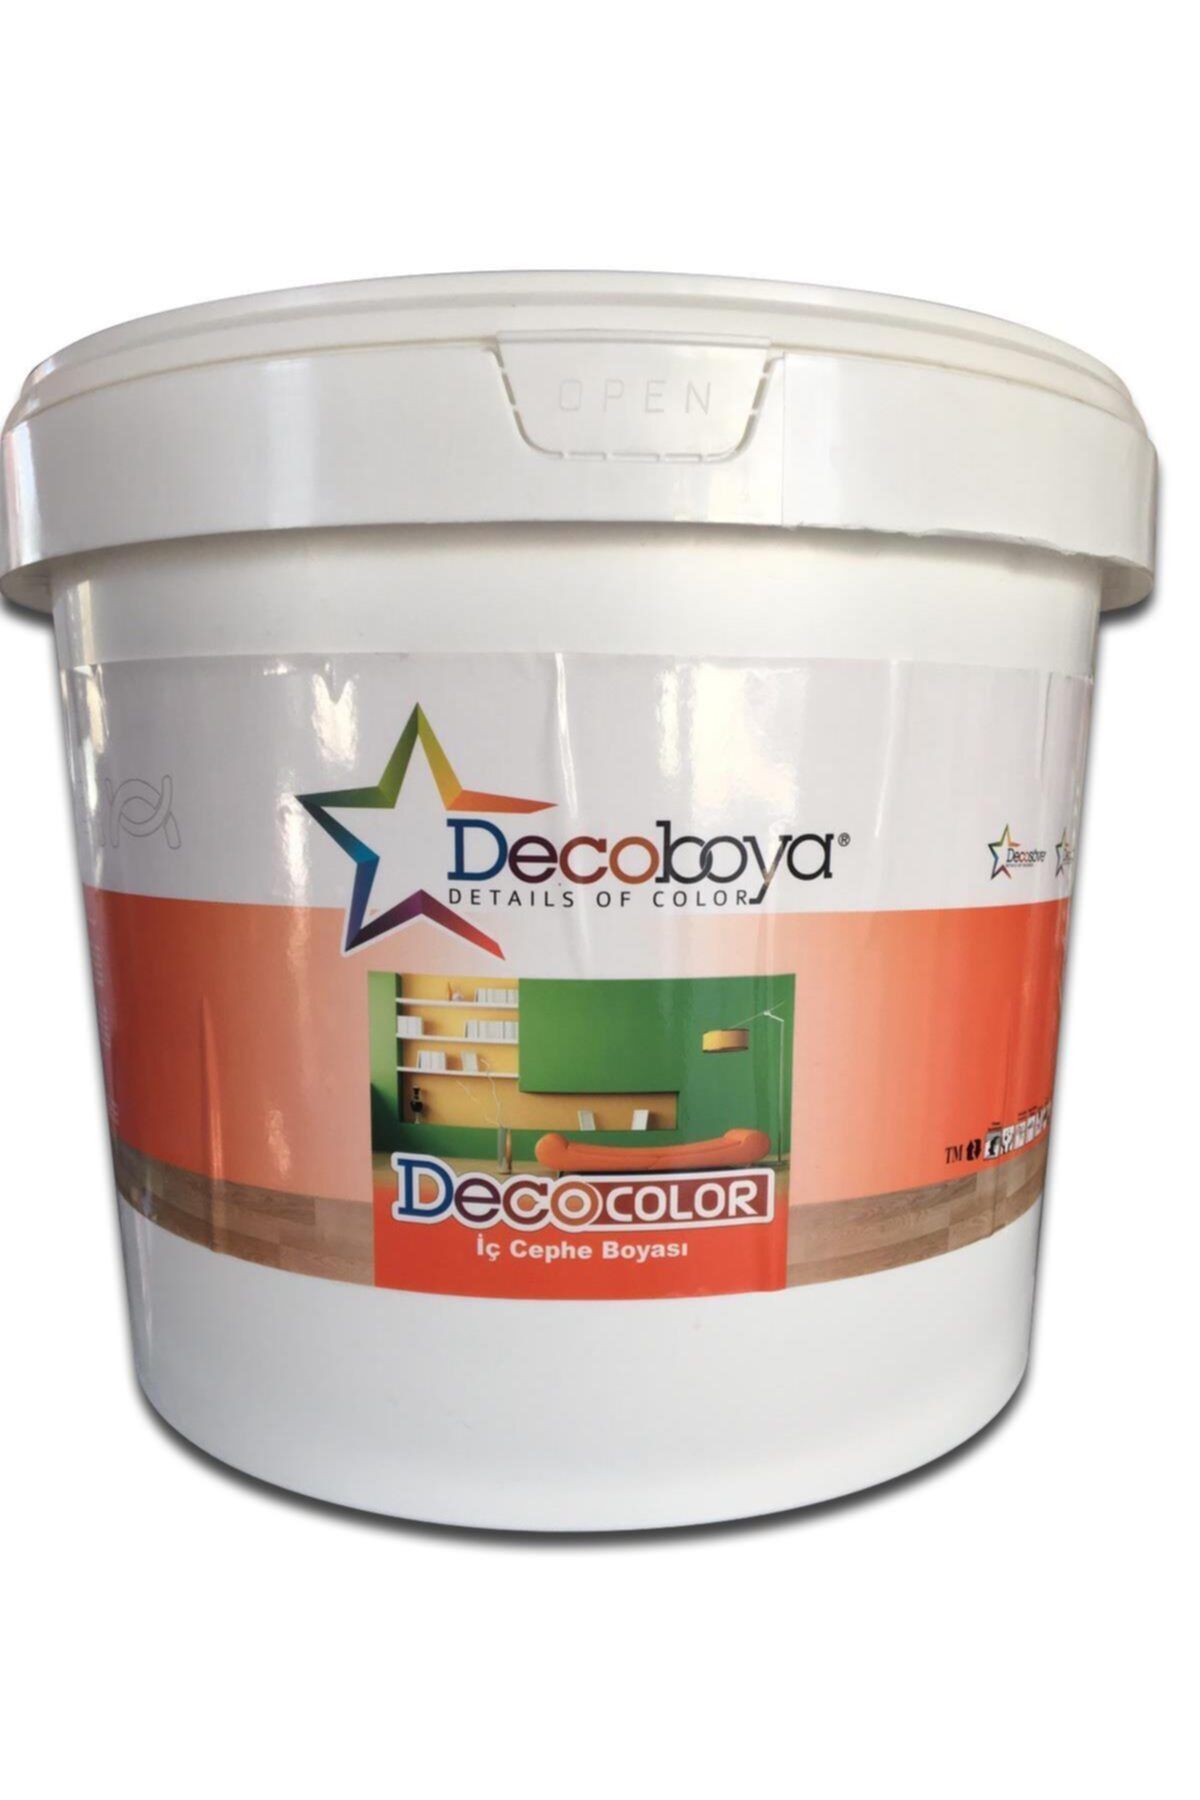 DecoBoya Deco Color Plastik Mat Iç Cephe Duvar Boyası 3kg Tüm Renkler